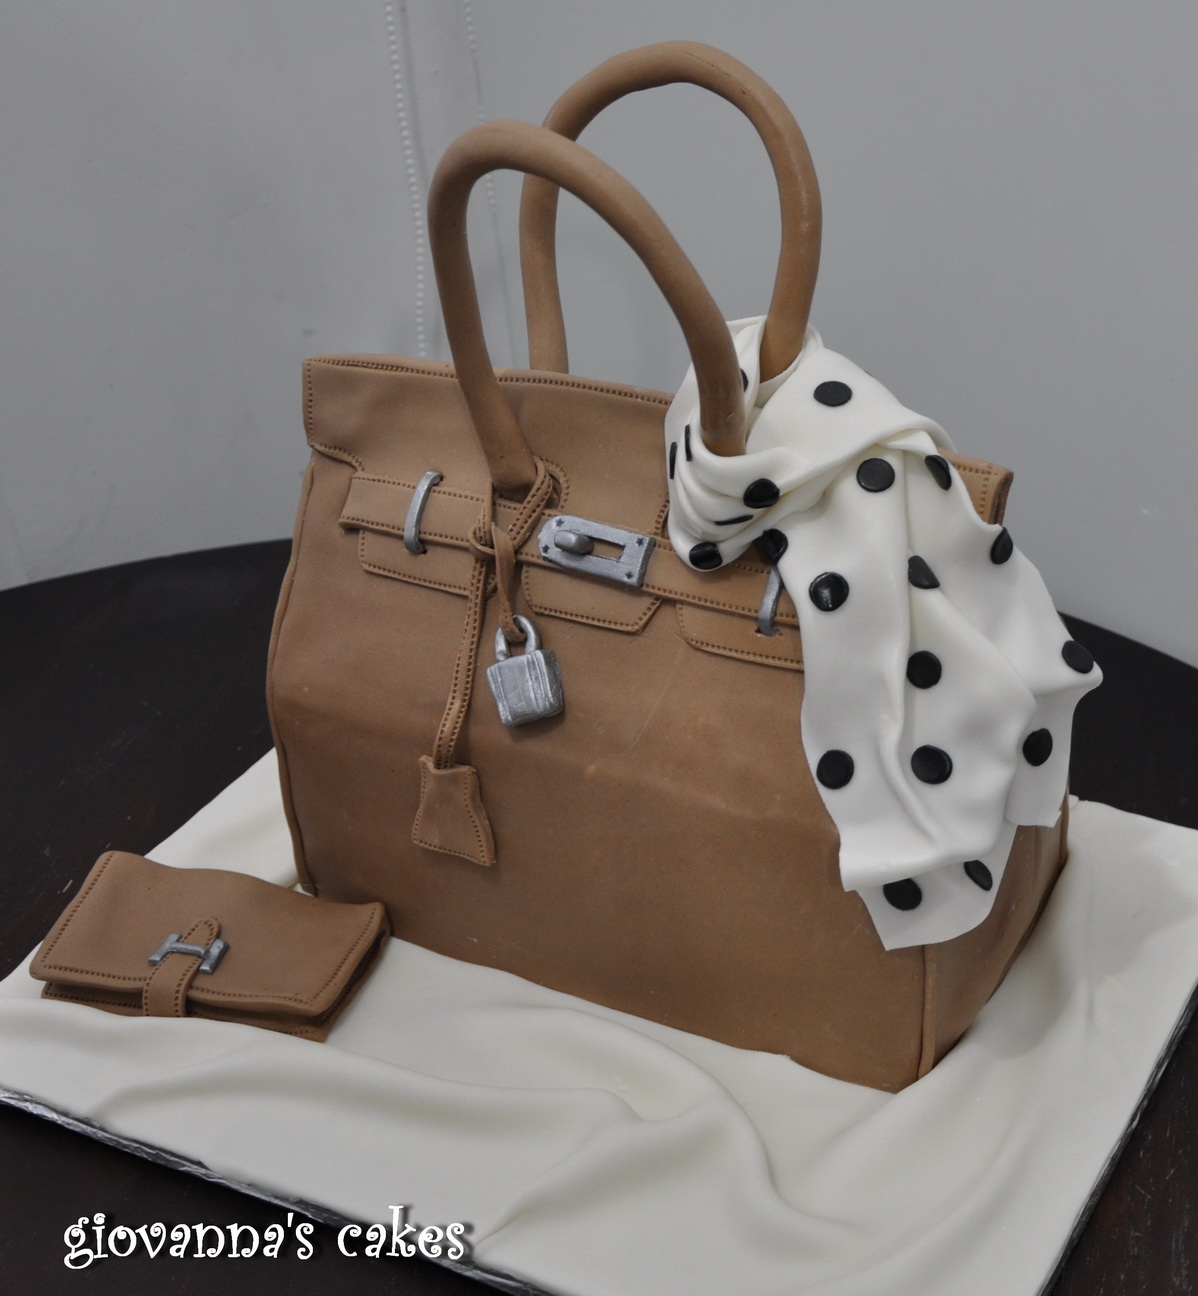 giovanna's cakes: Hermes bag cake